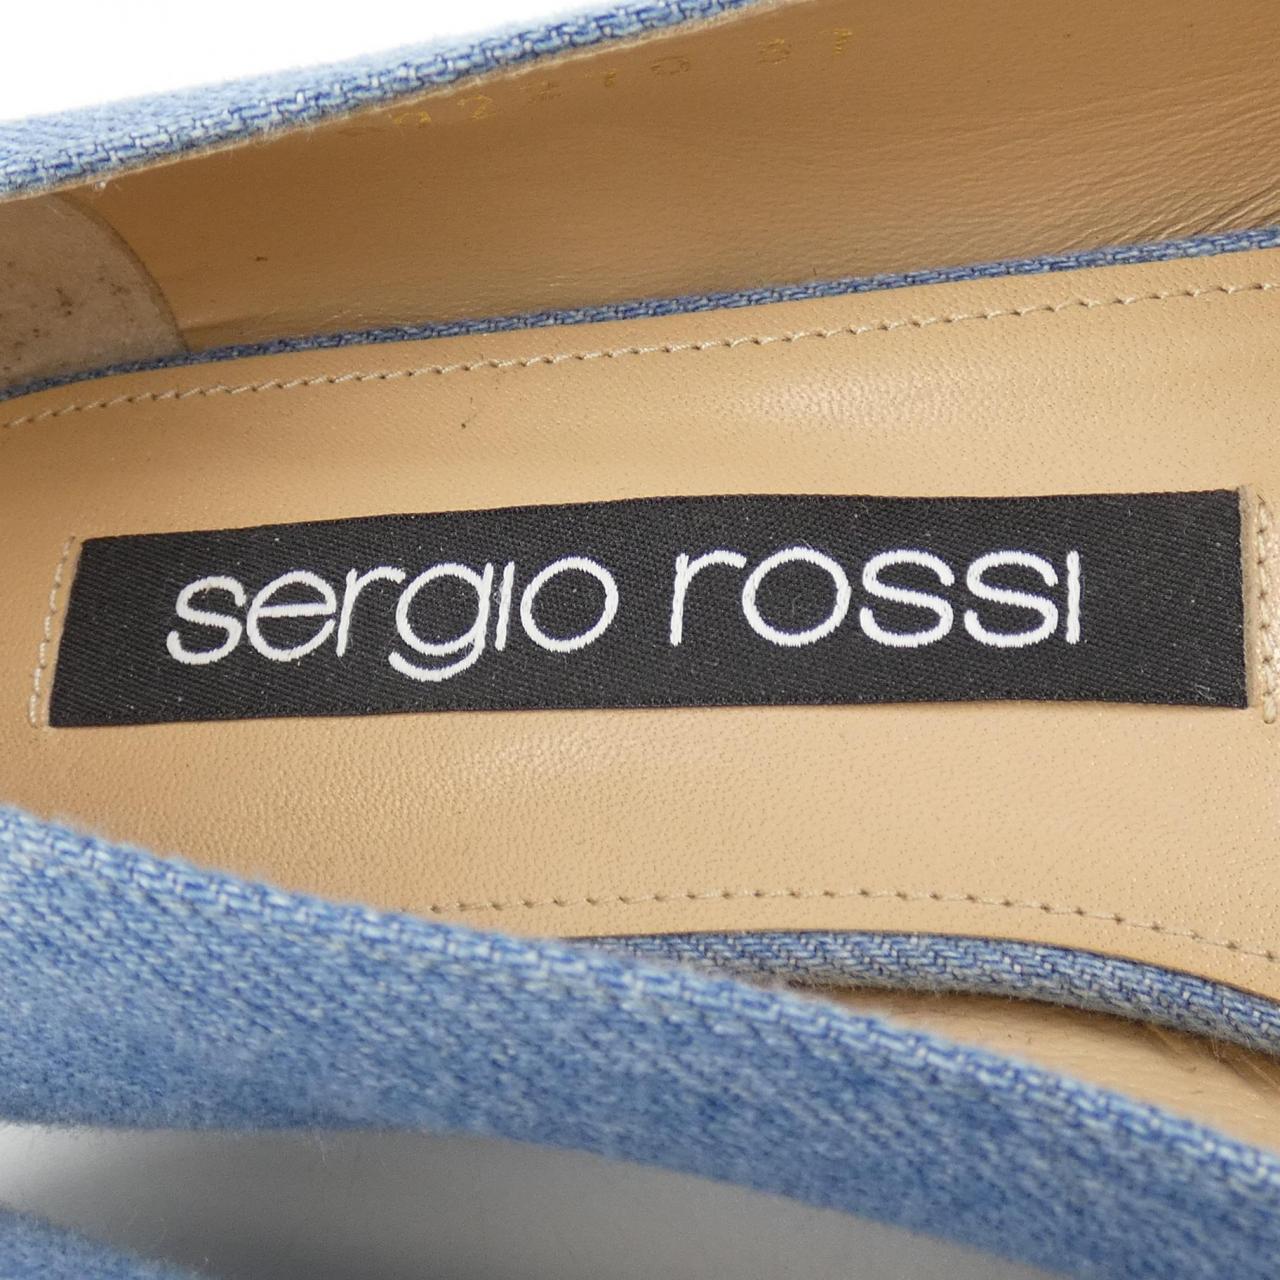 sergio rossi塞尔吉奥·罗西 平底鞋